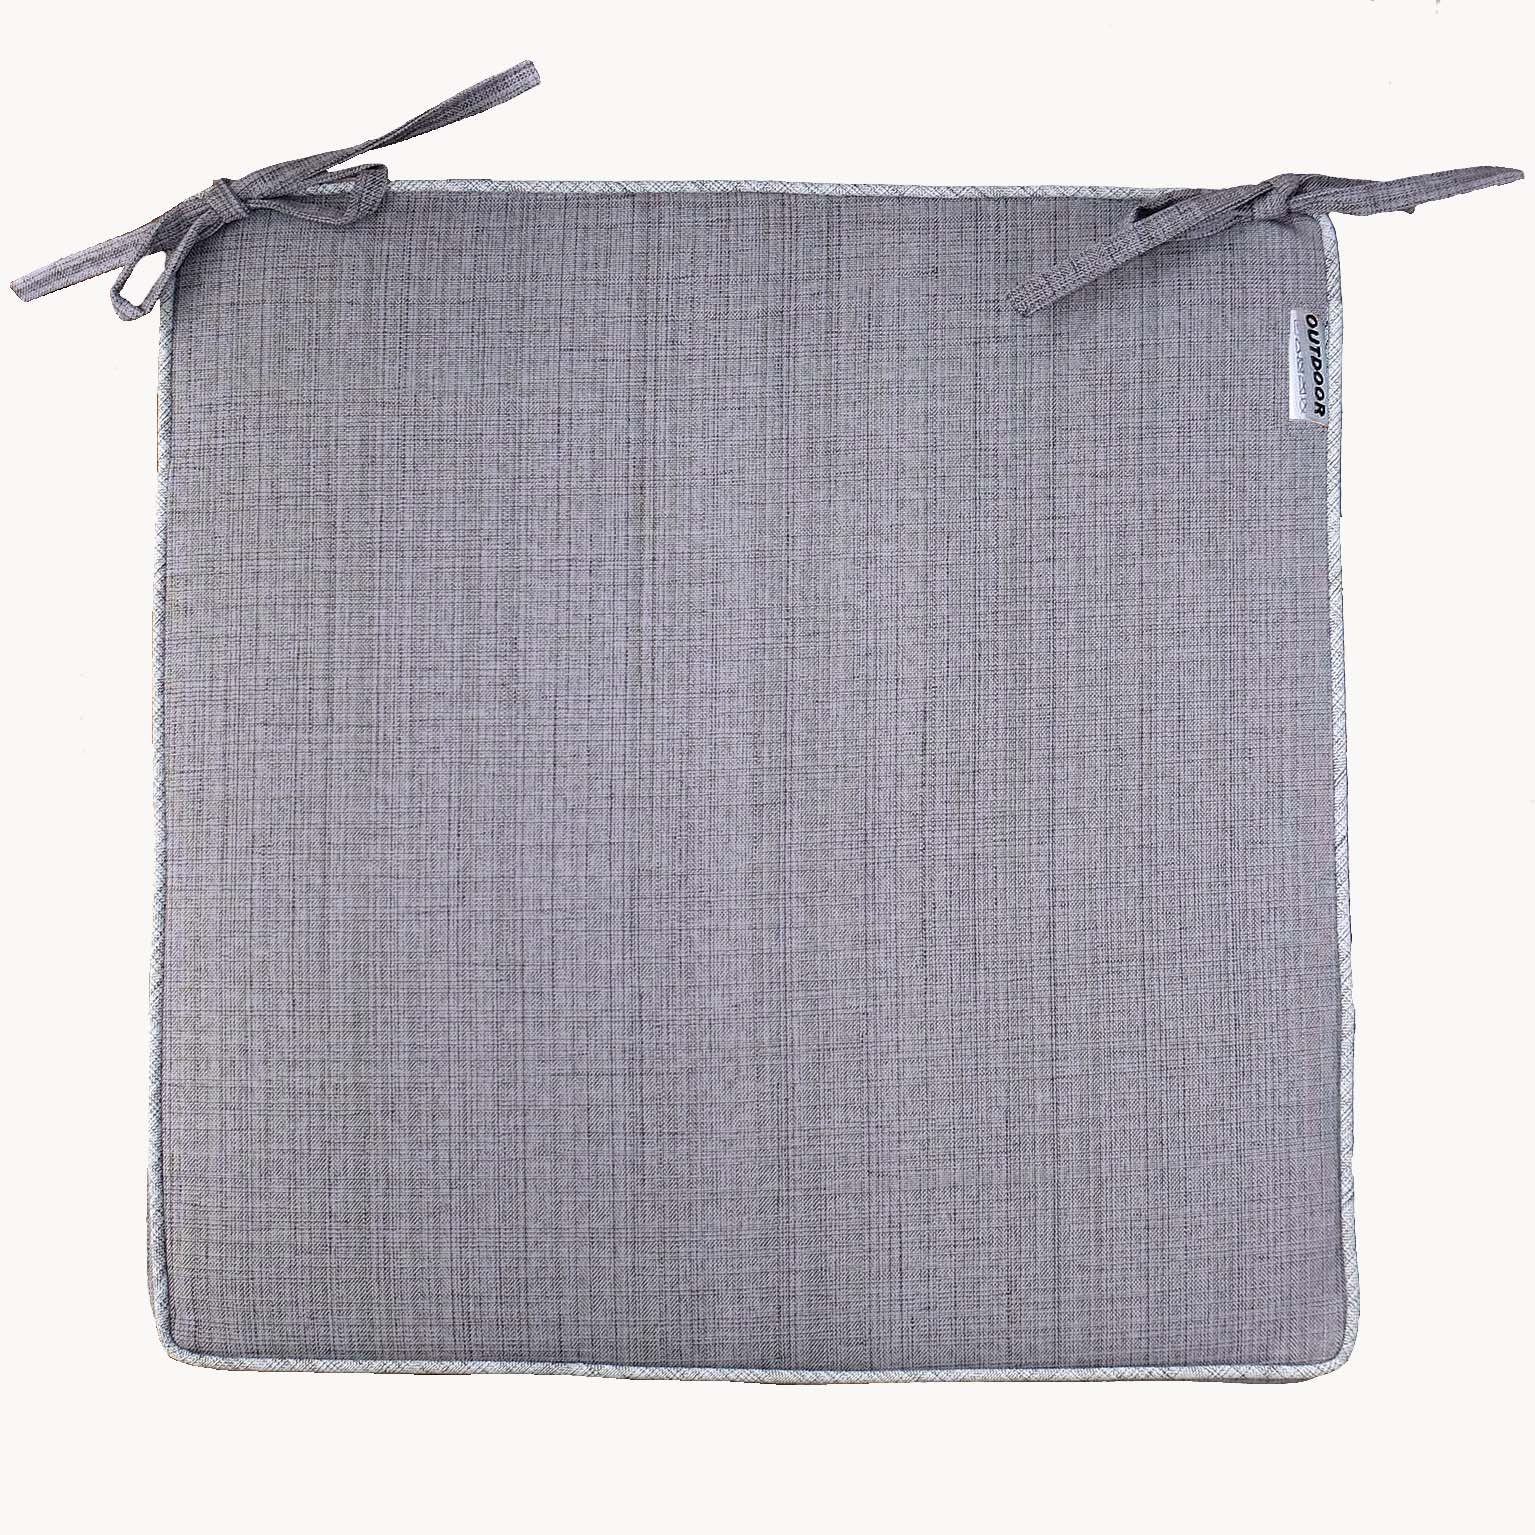 TextilDepot24 Sitzkissen Sitzkissen 42 x 42 cm meliert Outdoor wetterbeständig, 2er Set grau